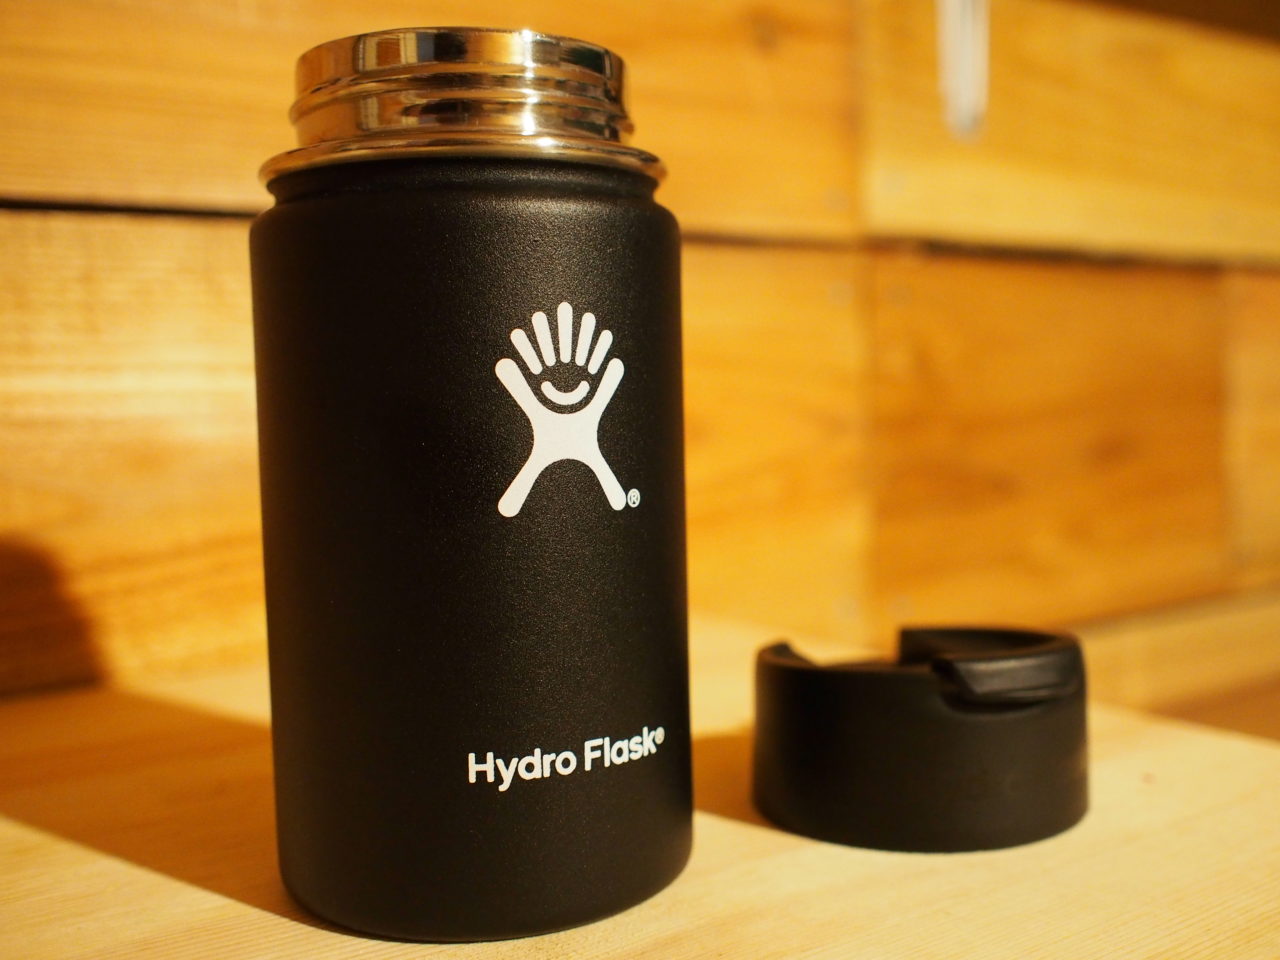 Hydro Flask(ハイドロフラスク)1年間使ってみた感想。間違いなく